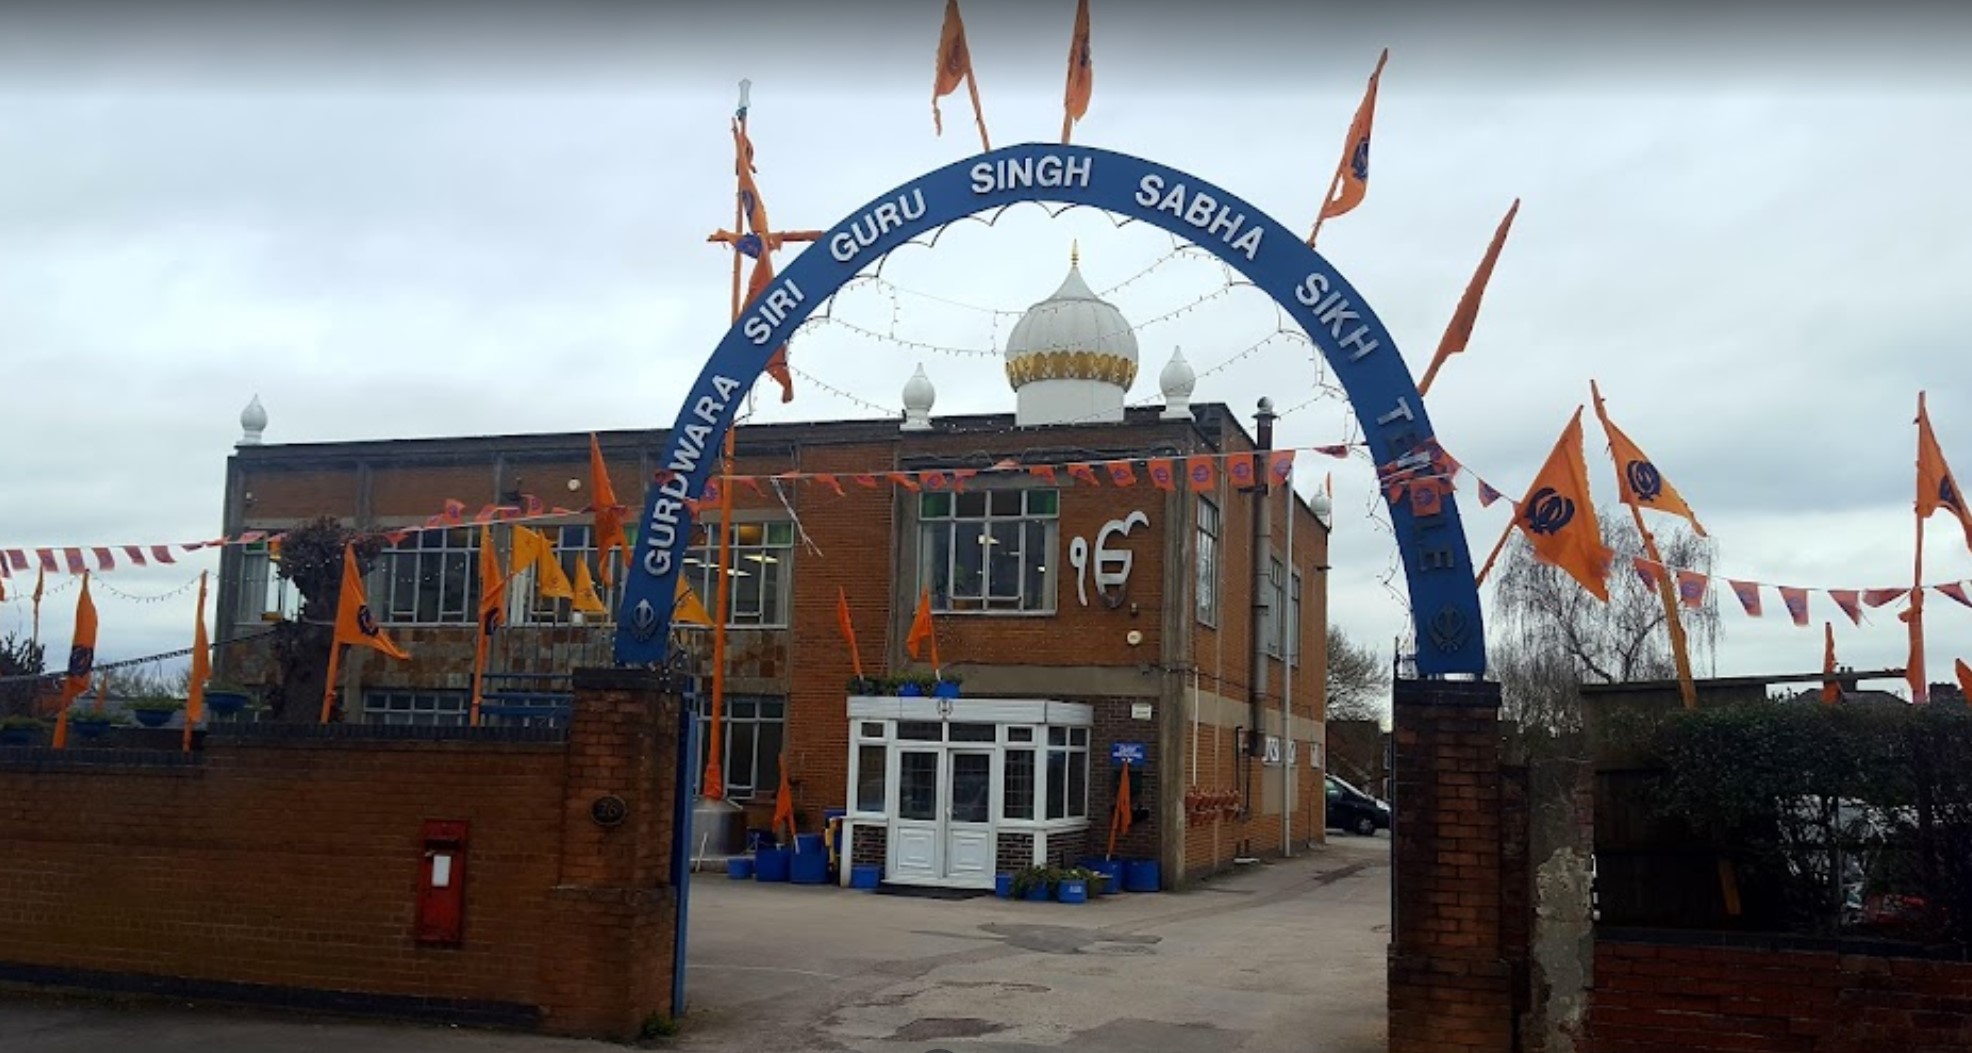 Sikh Temple – Gurdwara Singh Sabha